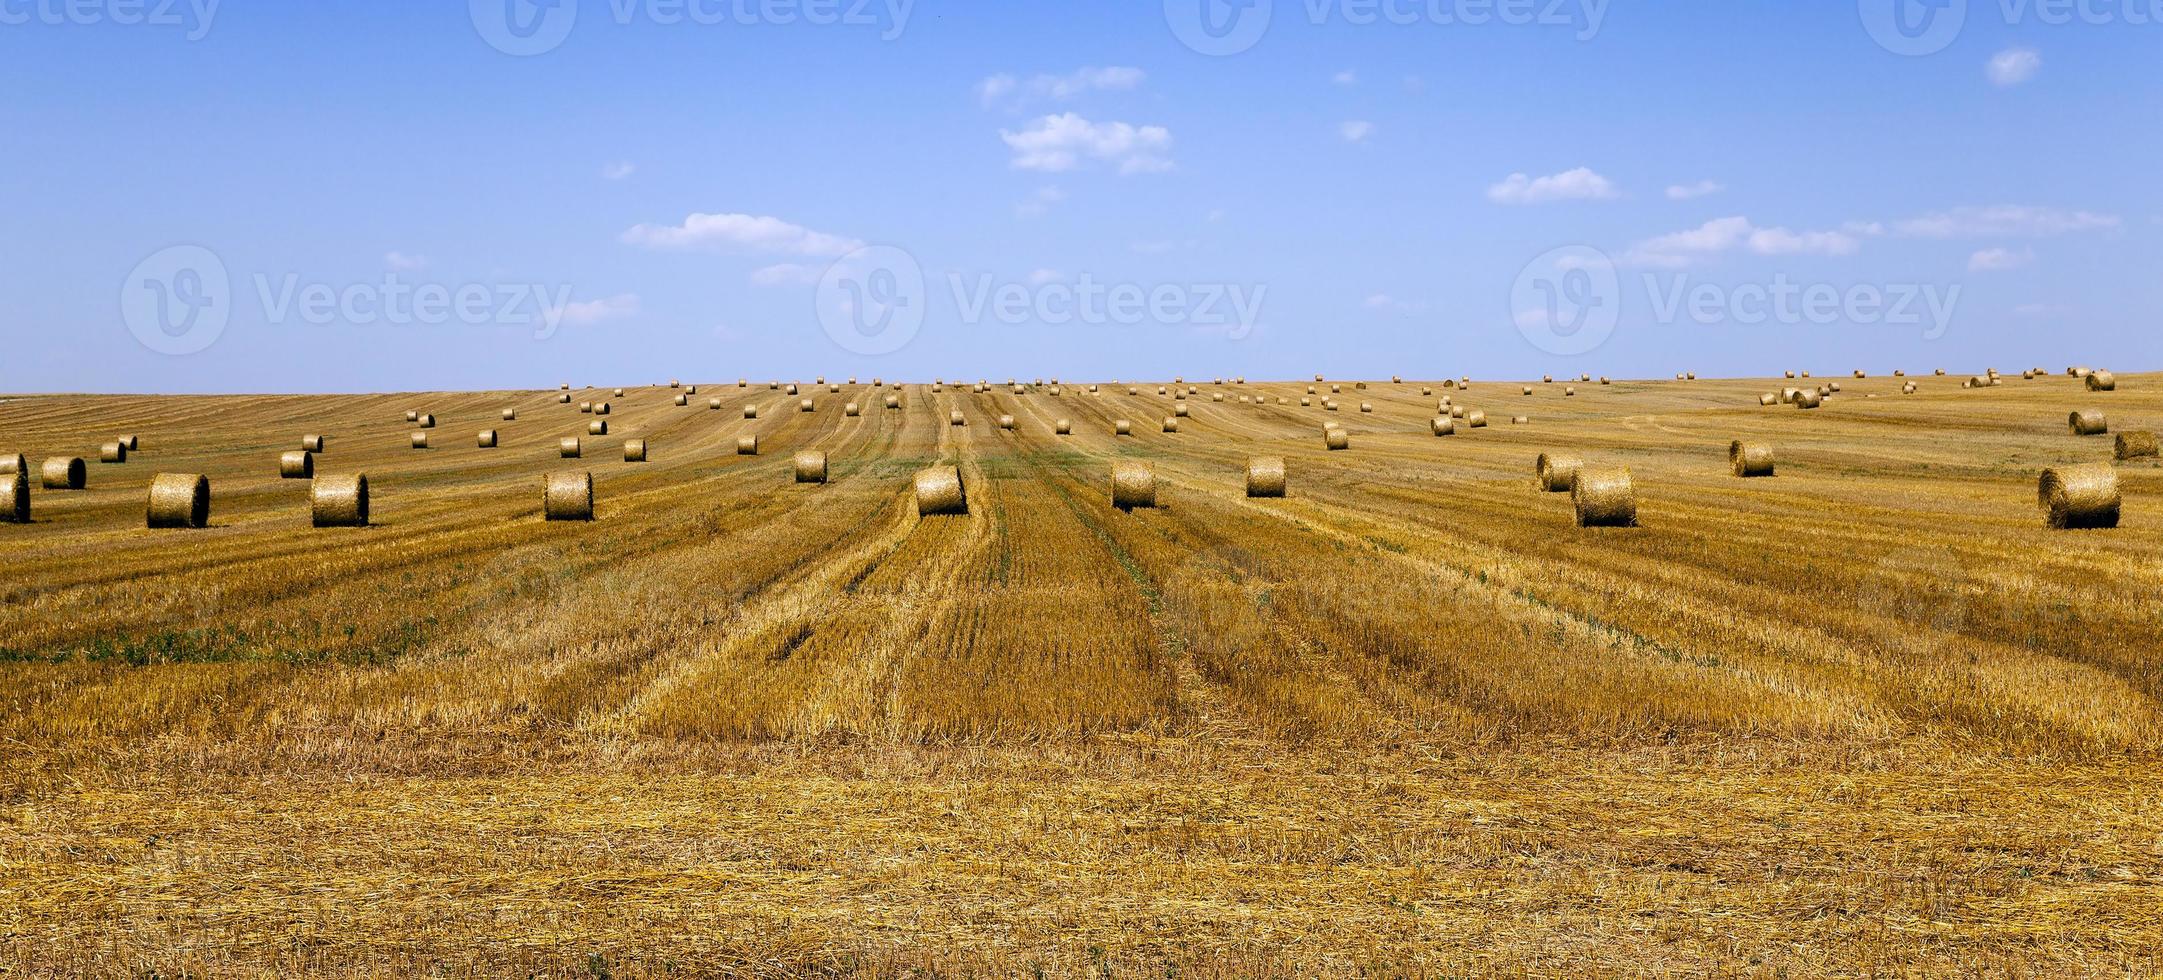 cereales durante la cosecha foto